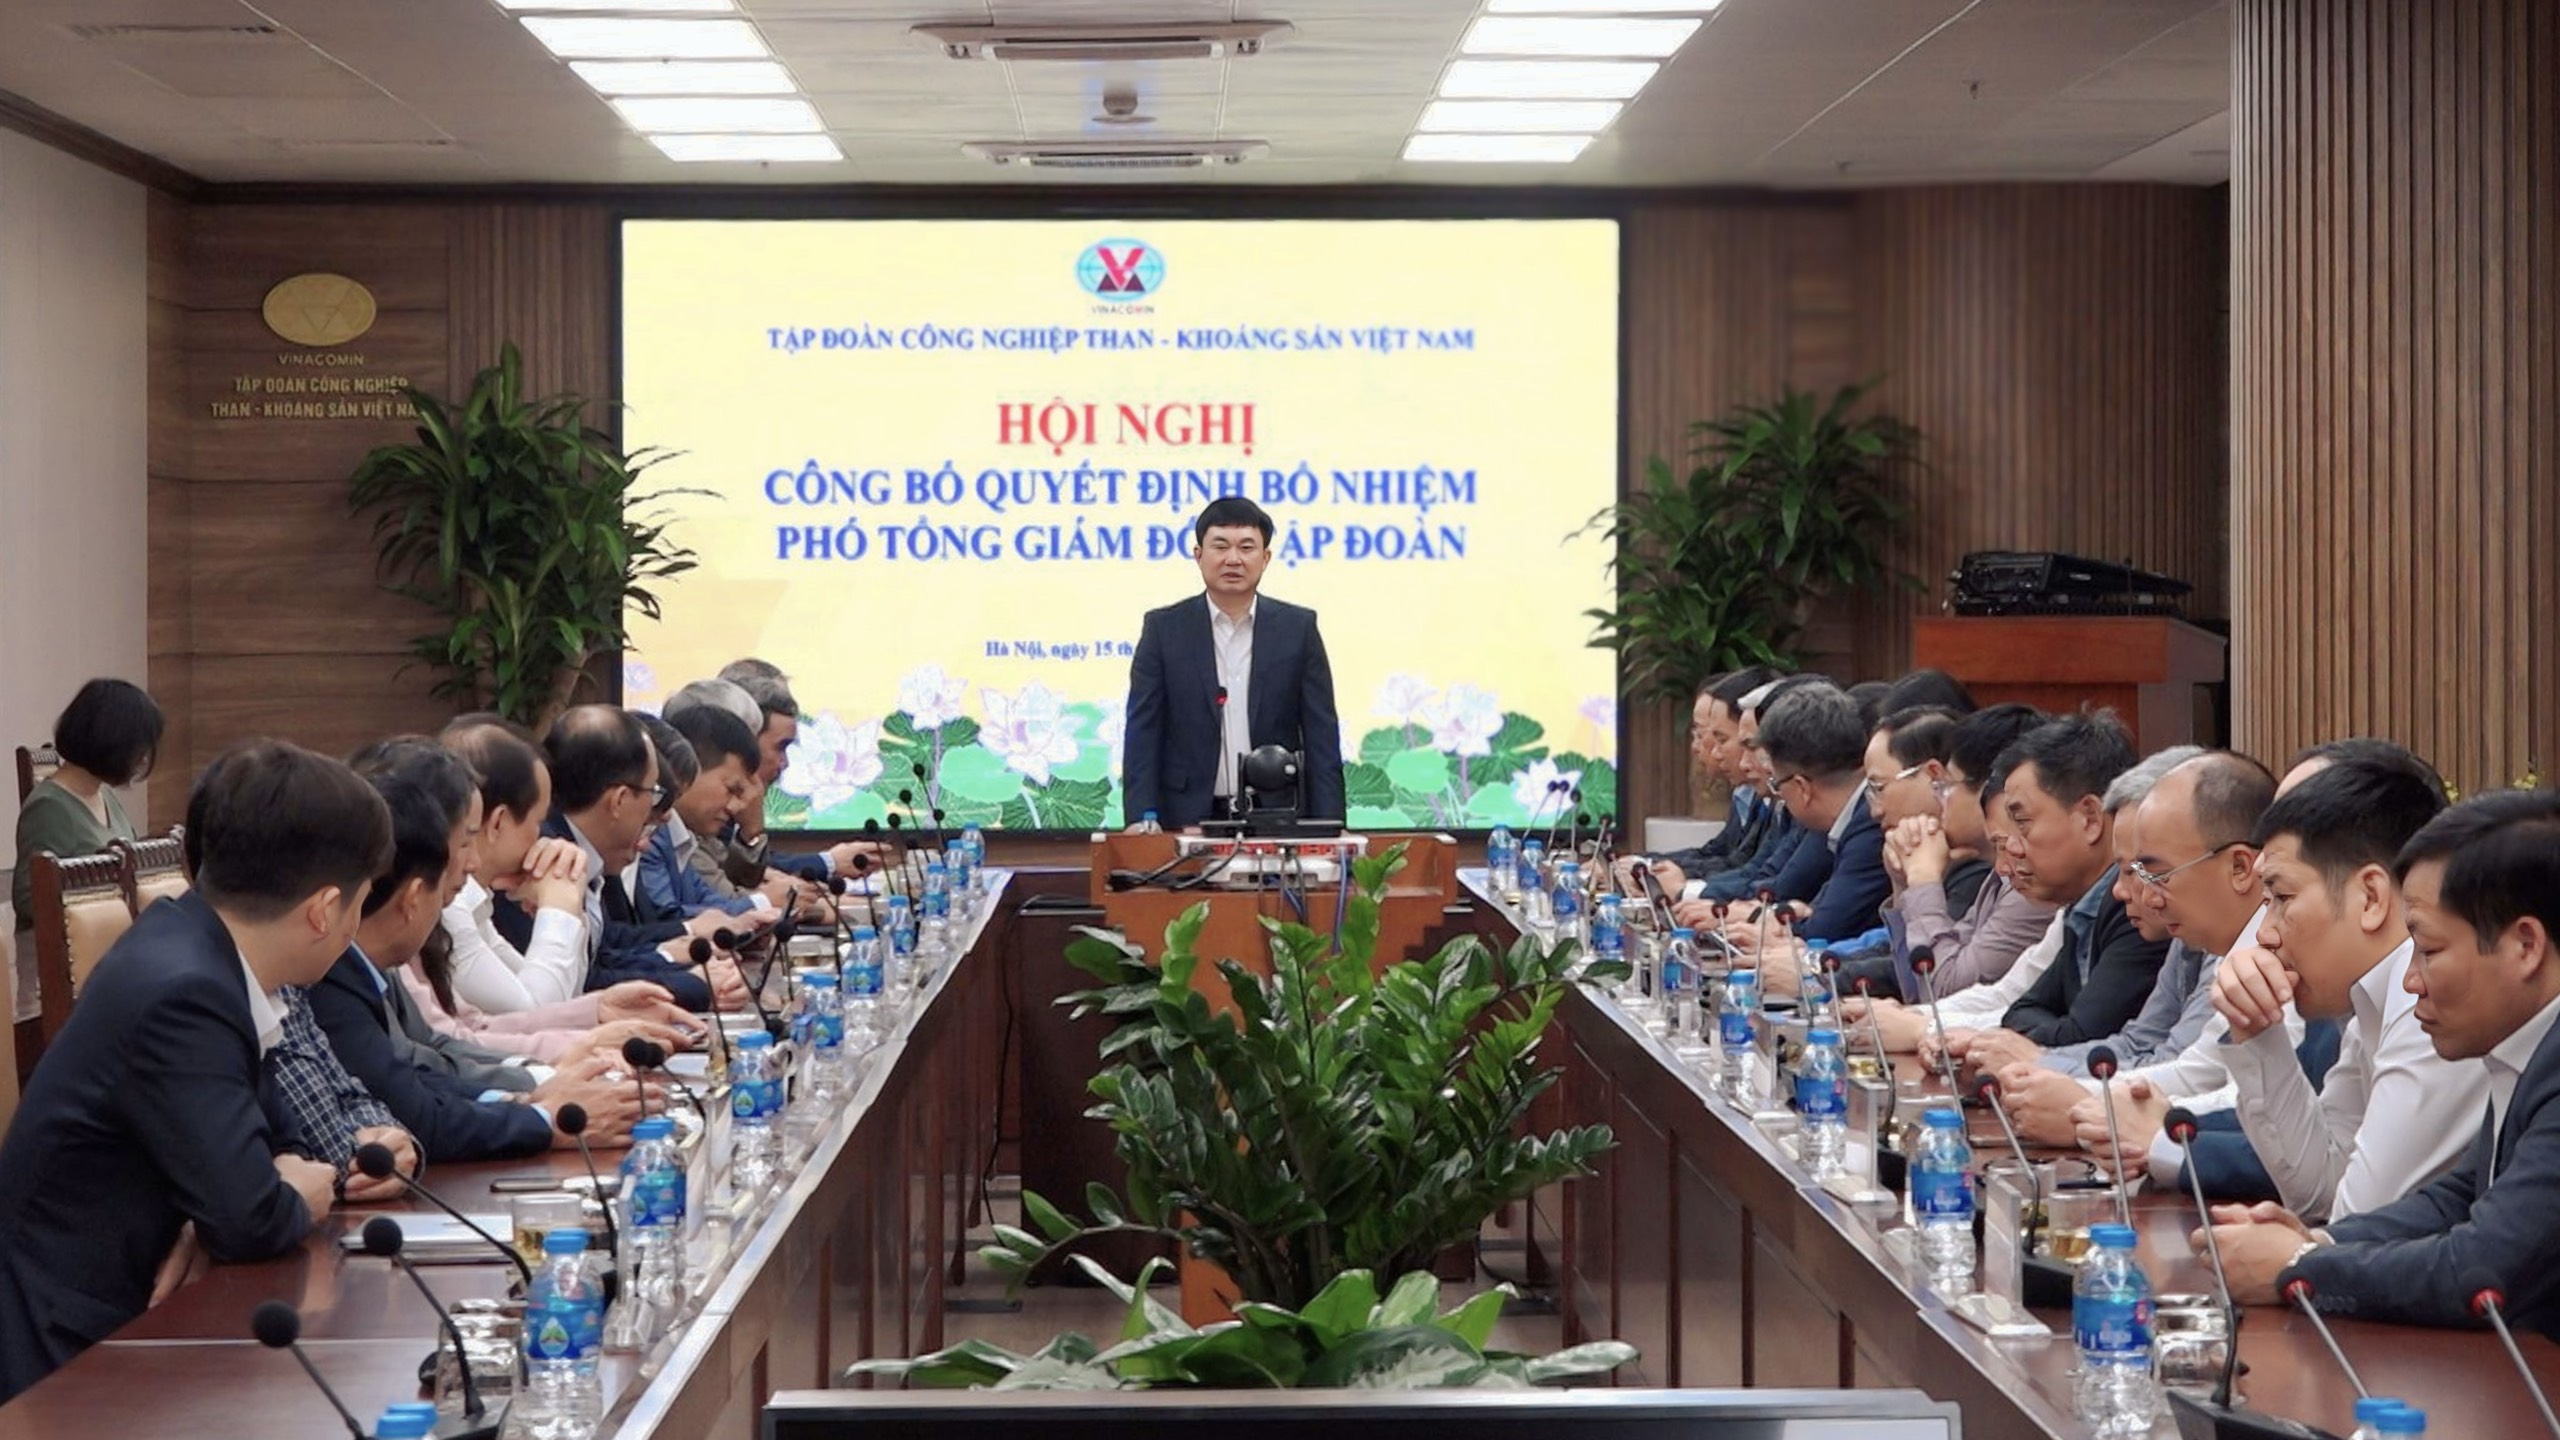 Công bố Quyết định bổ nhiệm Phó Tổng giám đốc TKV Nguyễn Huy Nam - Ảnh 1